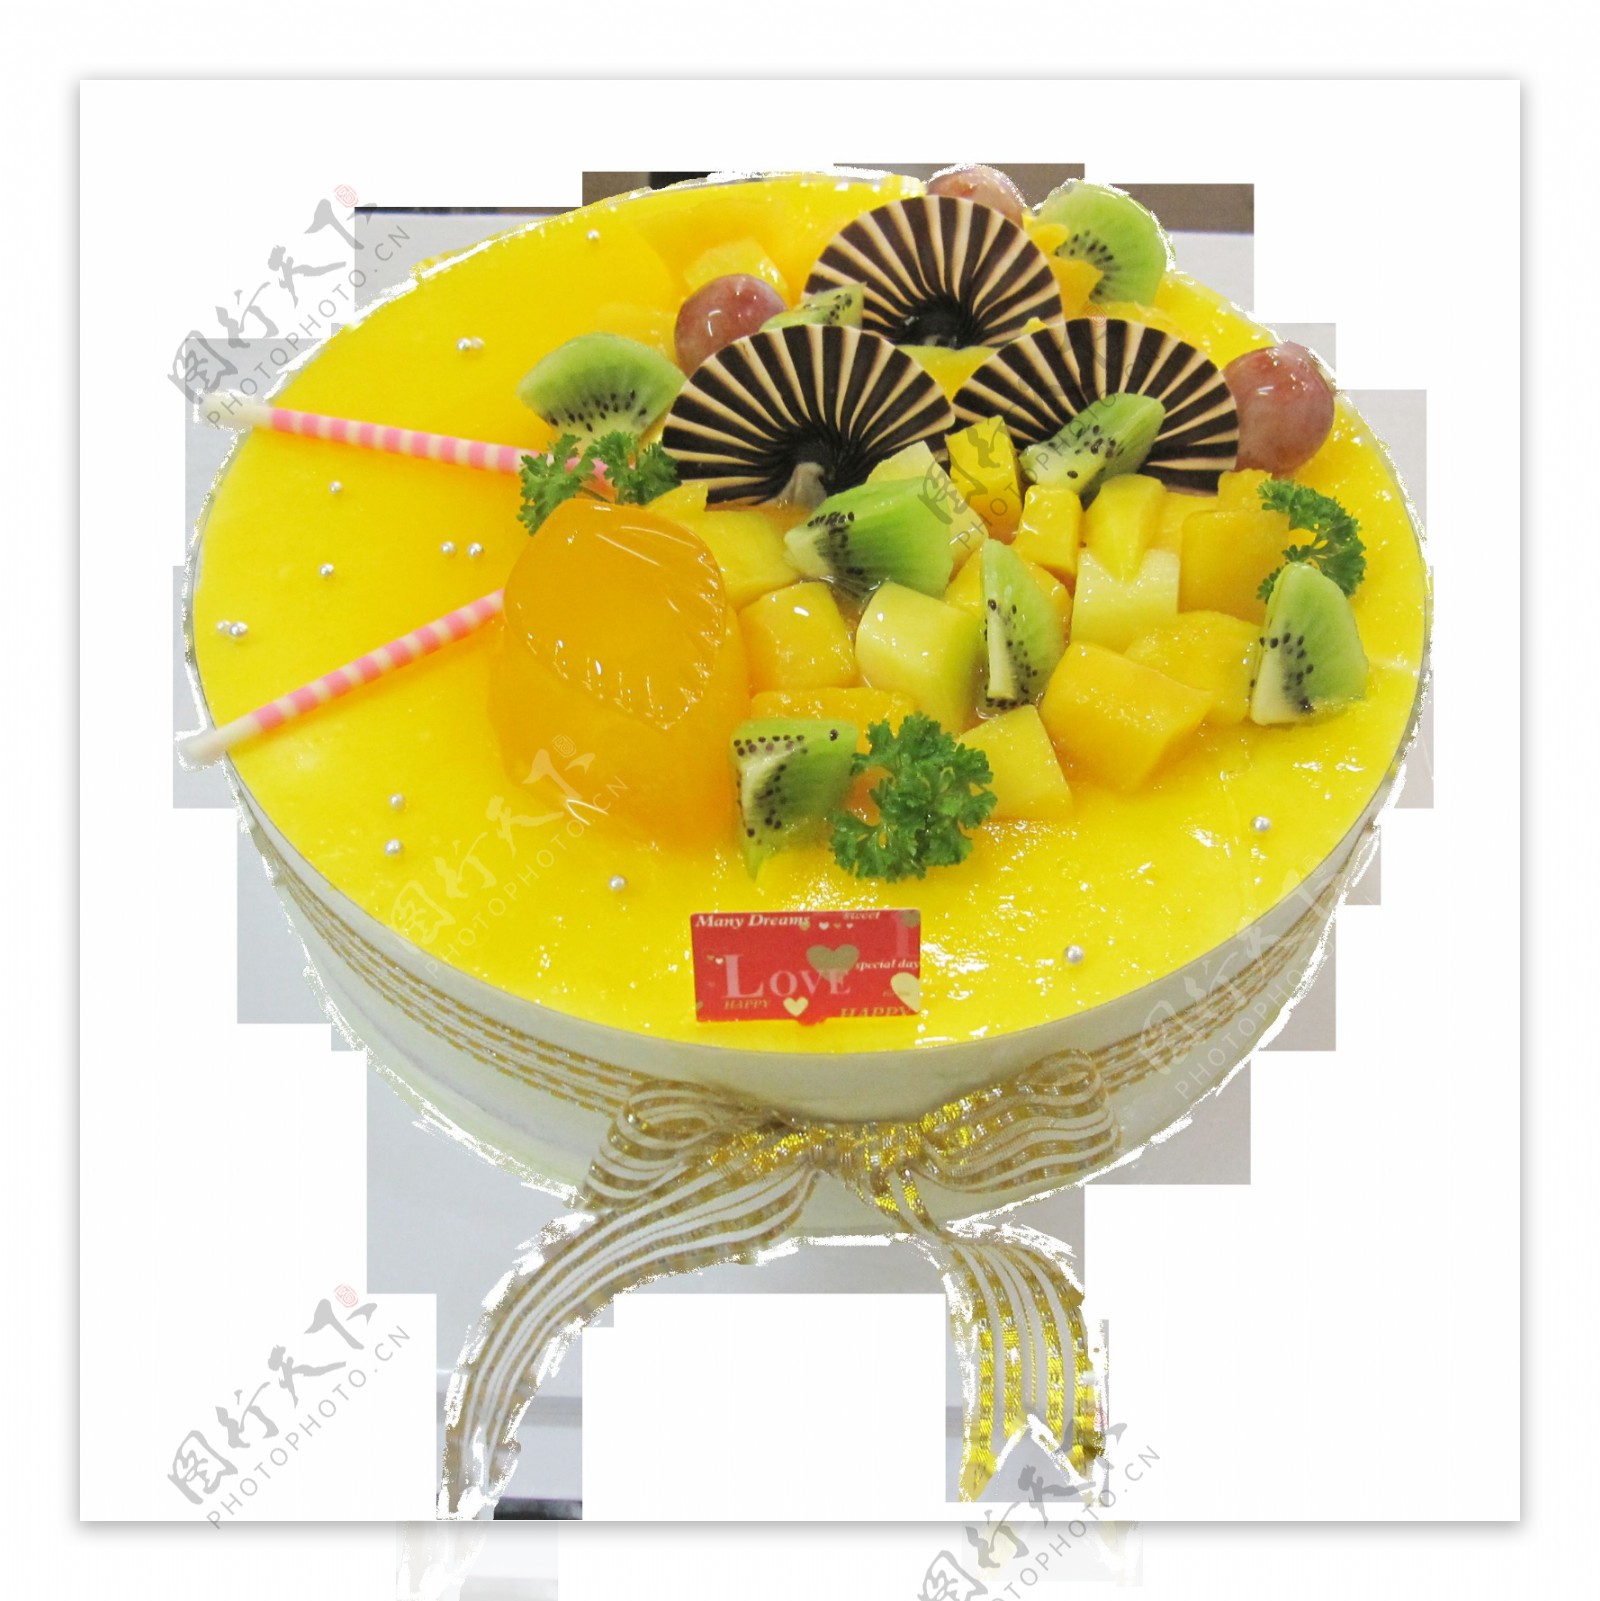 黄色奶油水果蛋糕素材